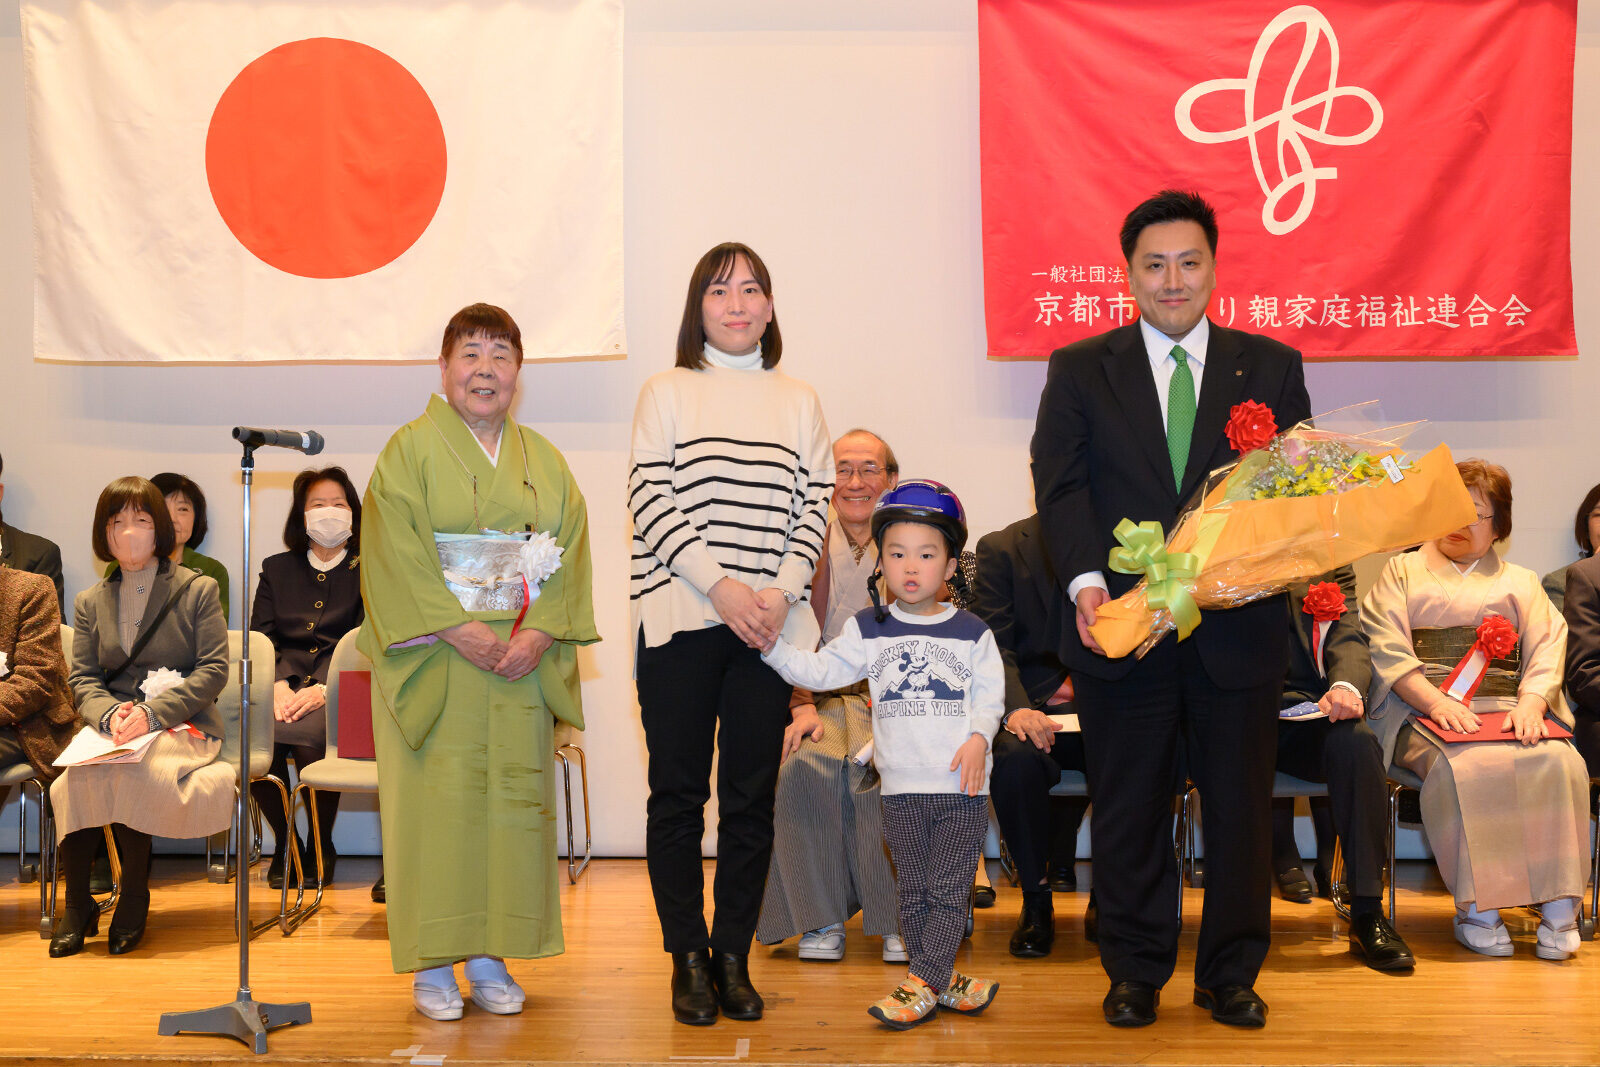 令和5年度 京都市ひとり親家庭福祉大会